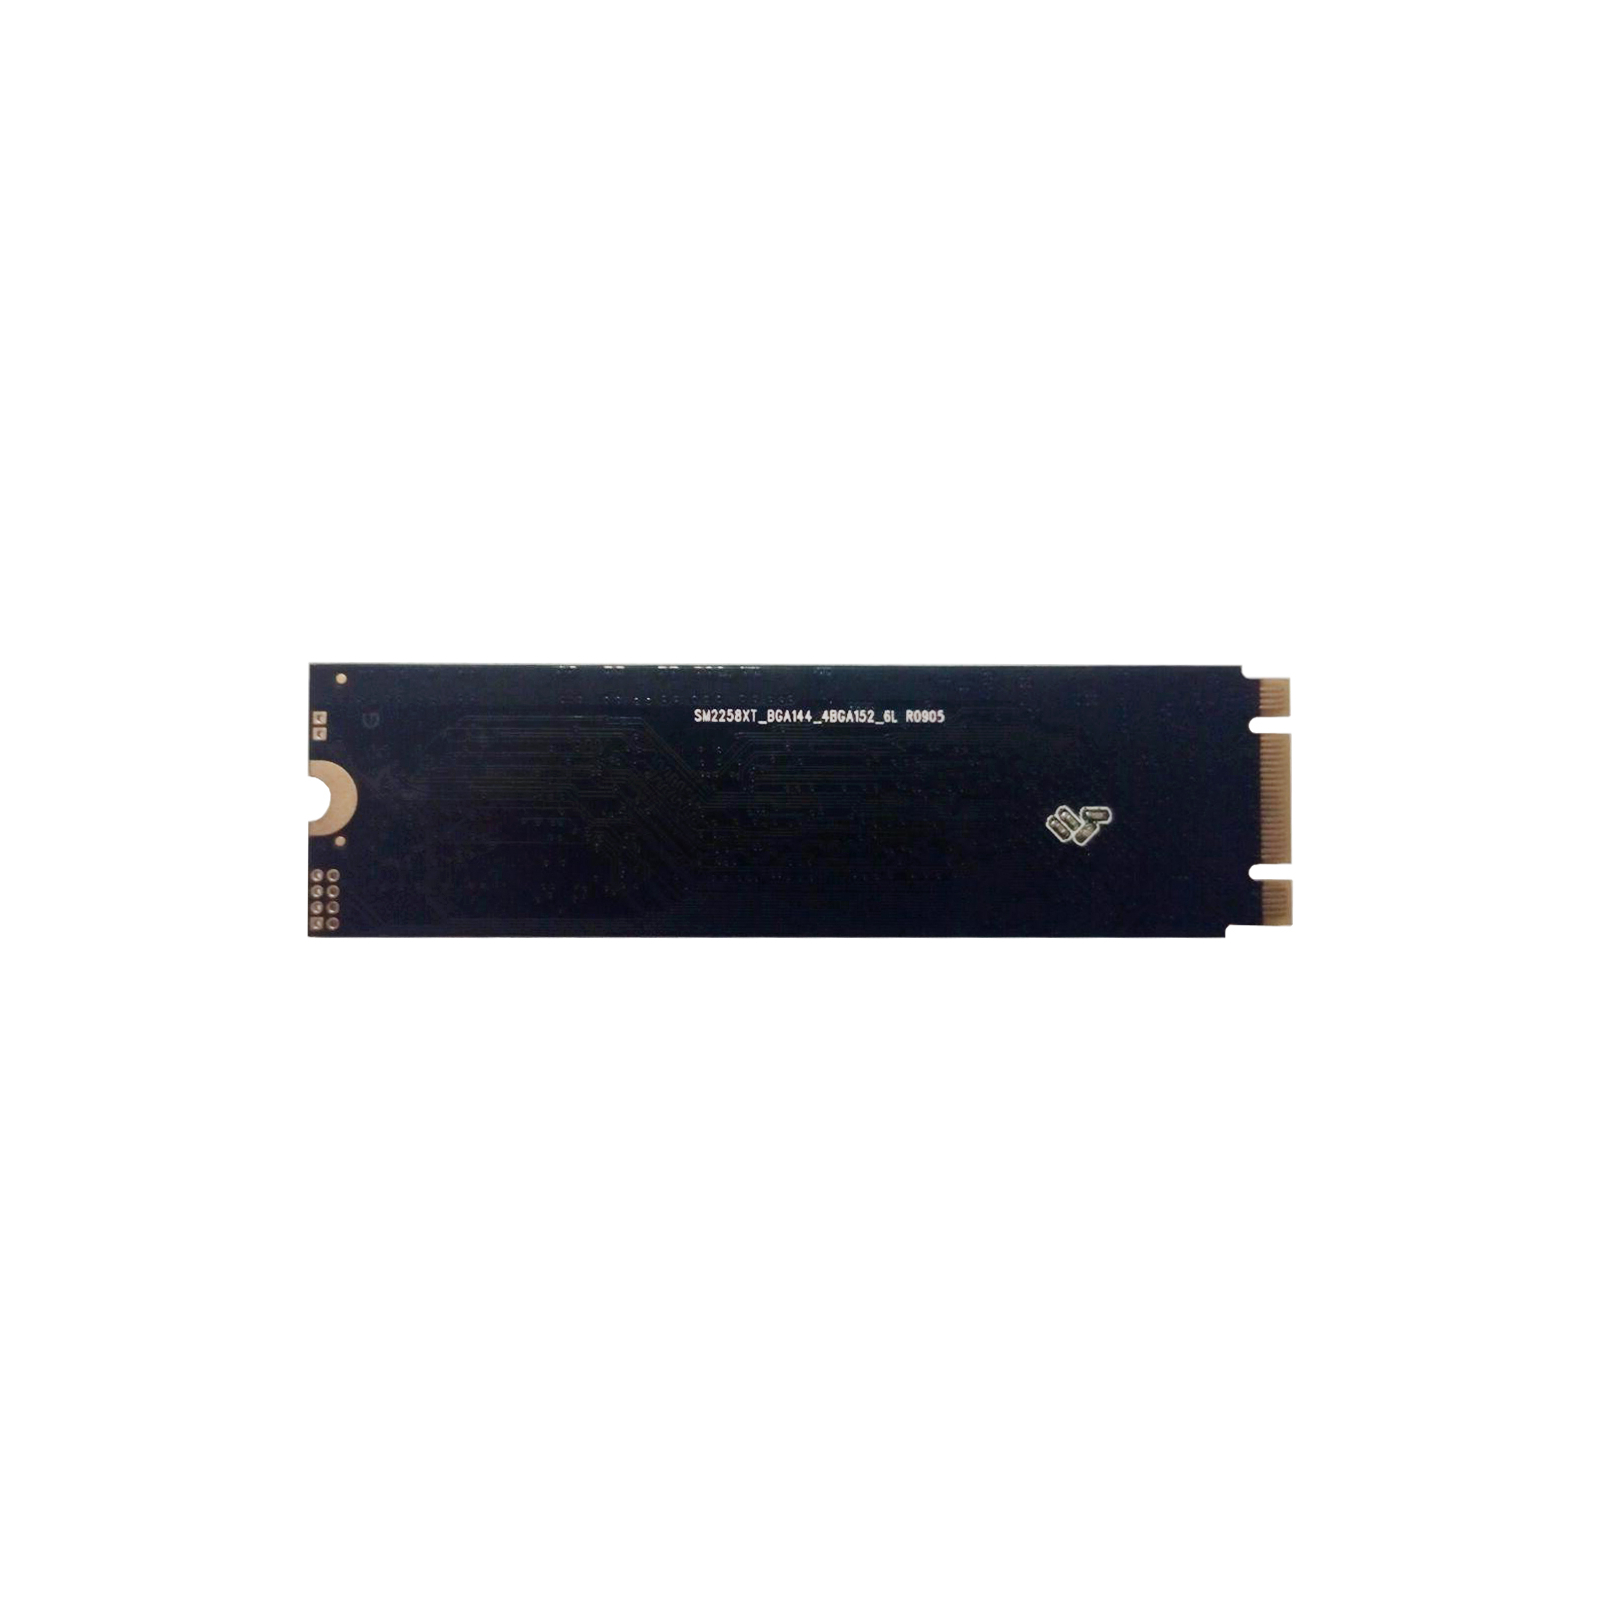 Накопичувач SSD M.2 2280 256GB Golden Memory (GMM2256) зображення 2